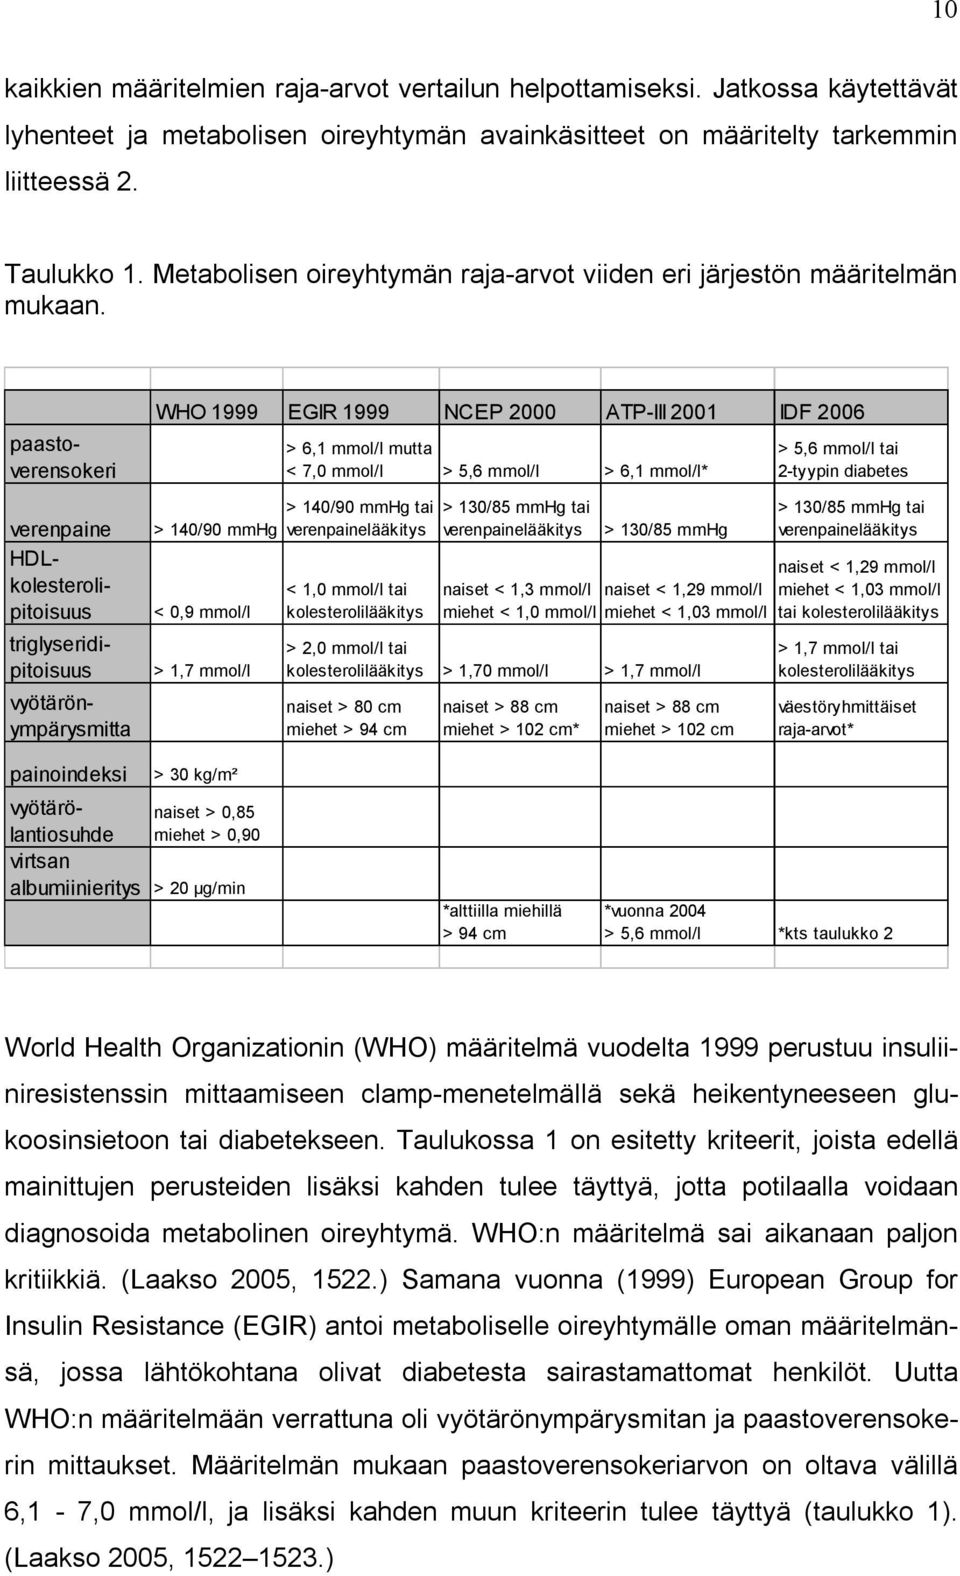 WHO 1999 EGIR 1999 NCEP 2000 ATP-III 2001 IDF 2006 > 140/90 mmhg < 0,9 mmol/l > 1,7 mmol/l > 6,1 mmol/l mutta < 7,0 mmol/l > 5,6 mmol/l > 6,1 mmol/l* > 140/90 mmhg tai verenpainelääkitys < 1,0 mmol/l